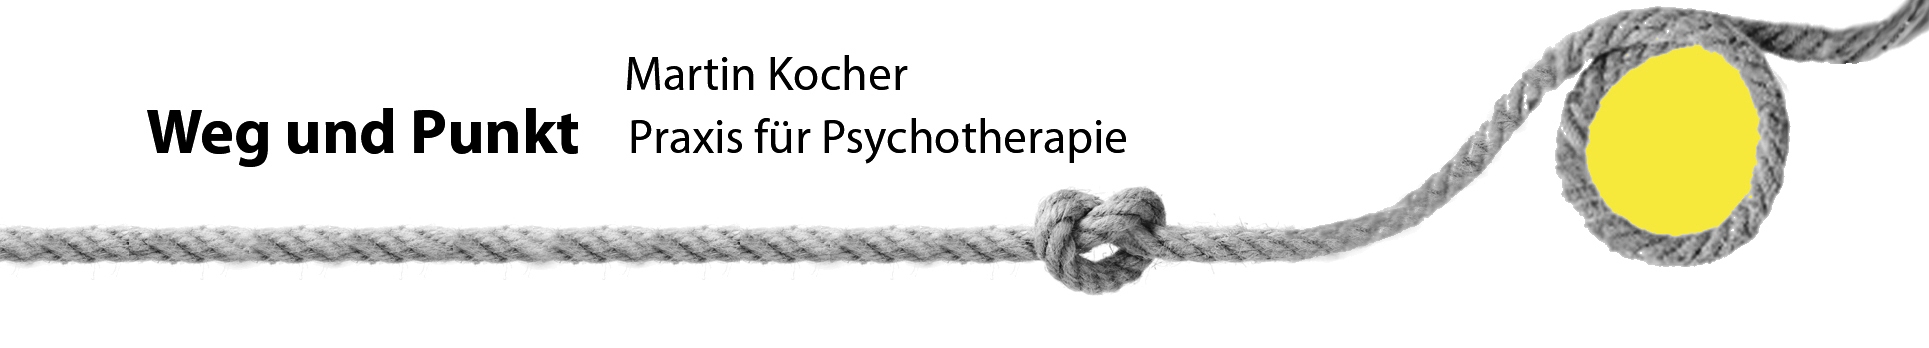 Logo wegundpunkt - Praxis für Psychotherapie M. Kocher